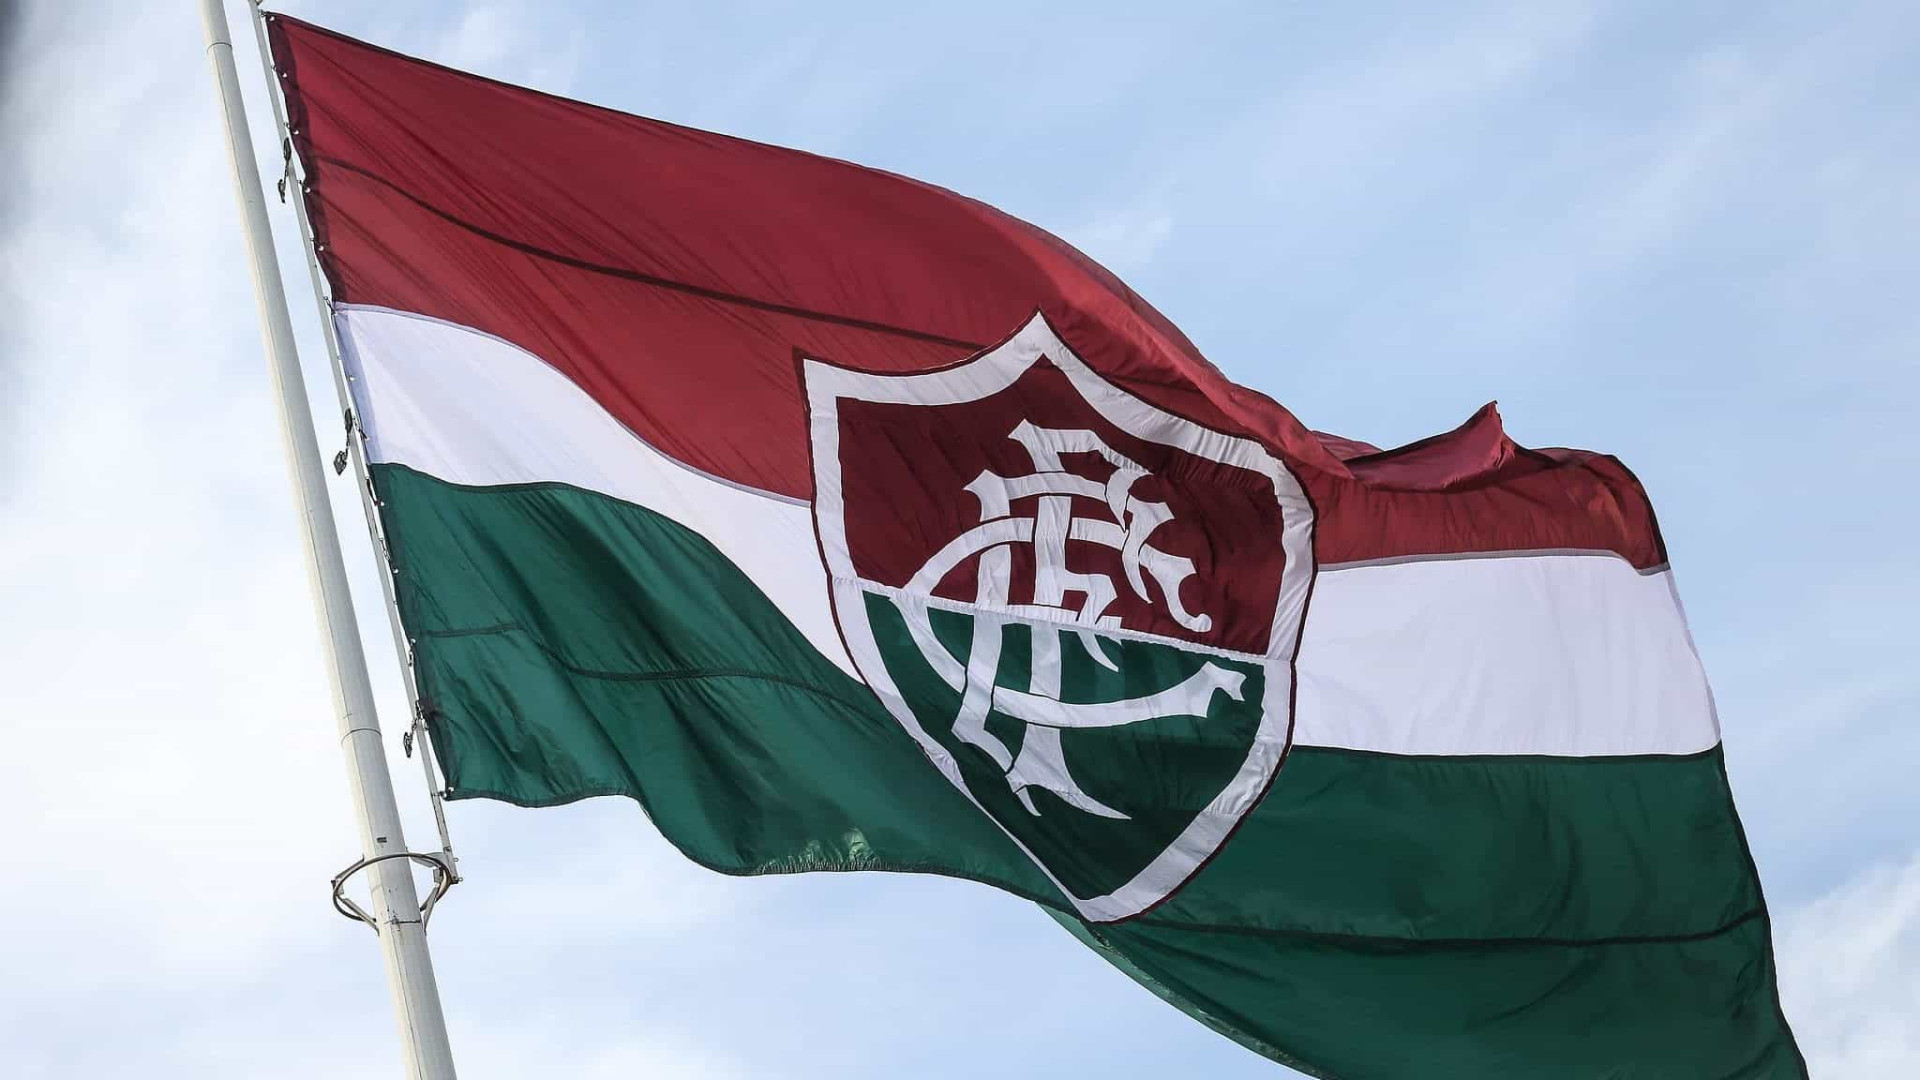 Goleiro Fábio chega ao Flu mirando a Libertadores: "está na hora"